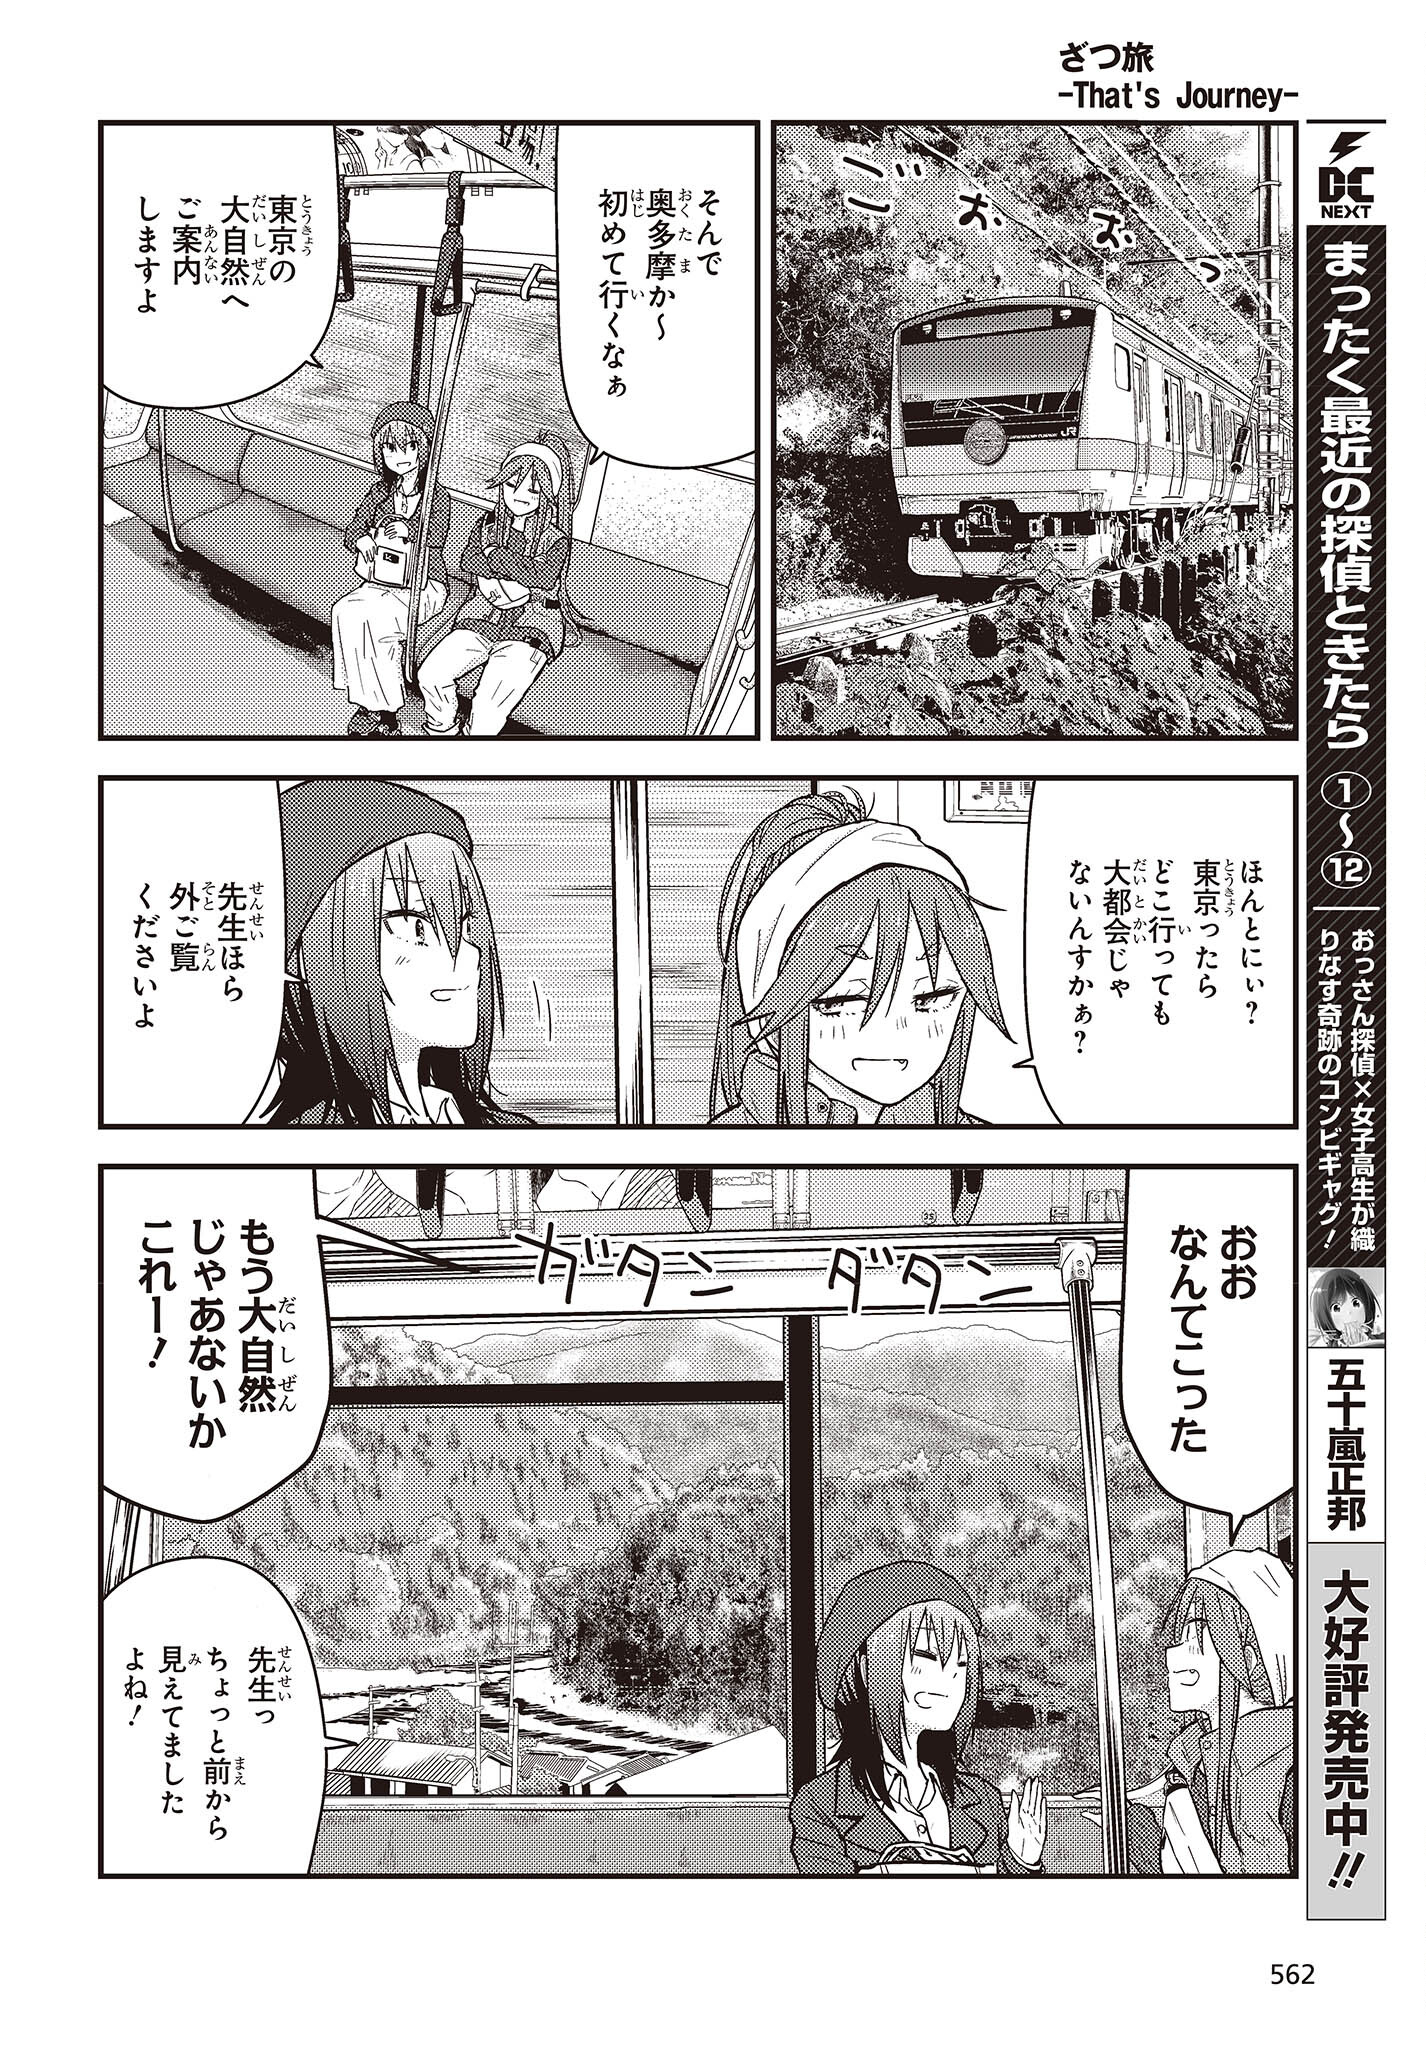 ざつ旅-That’s Journey- 第26.2話 - Page 4